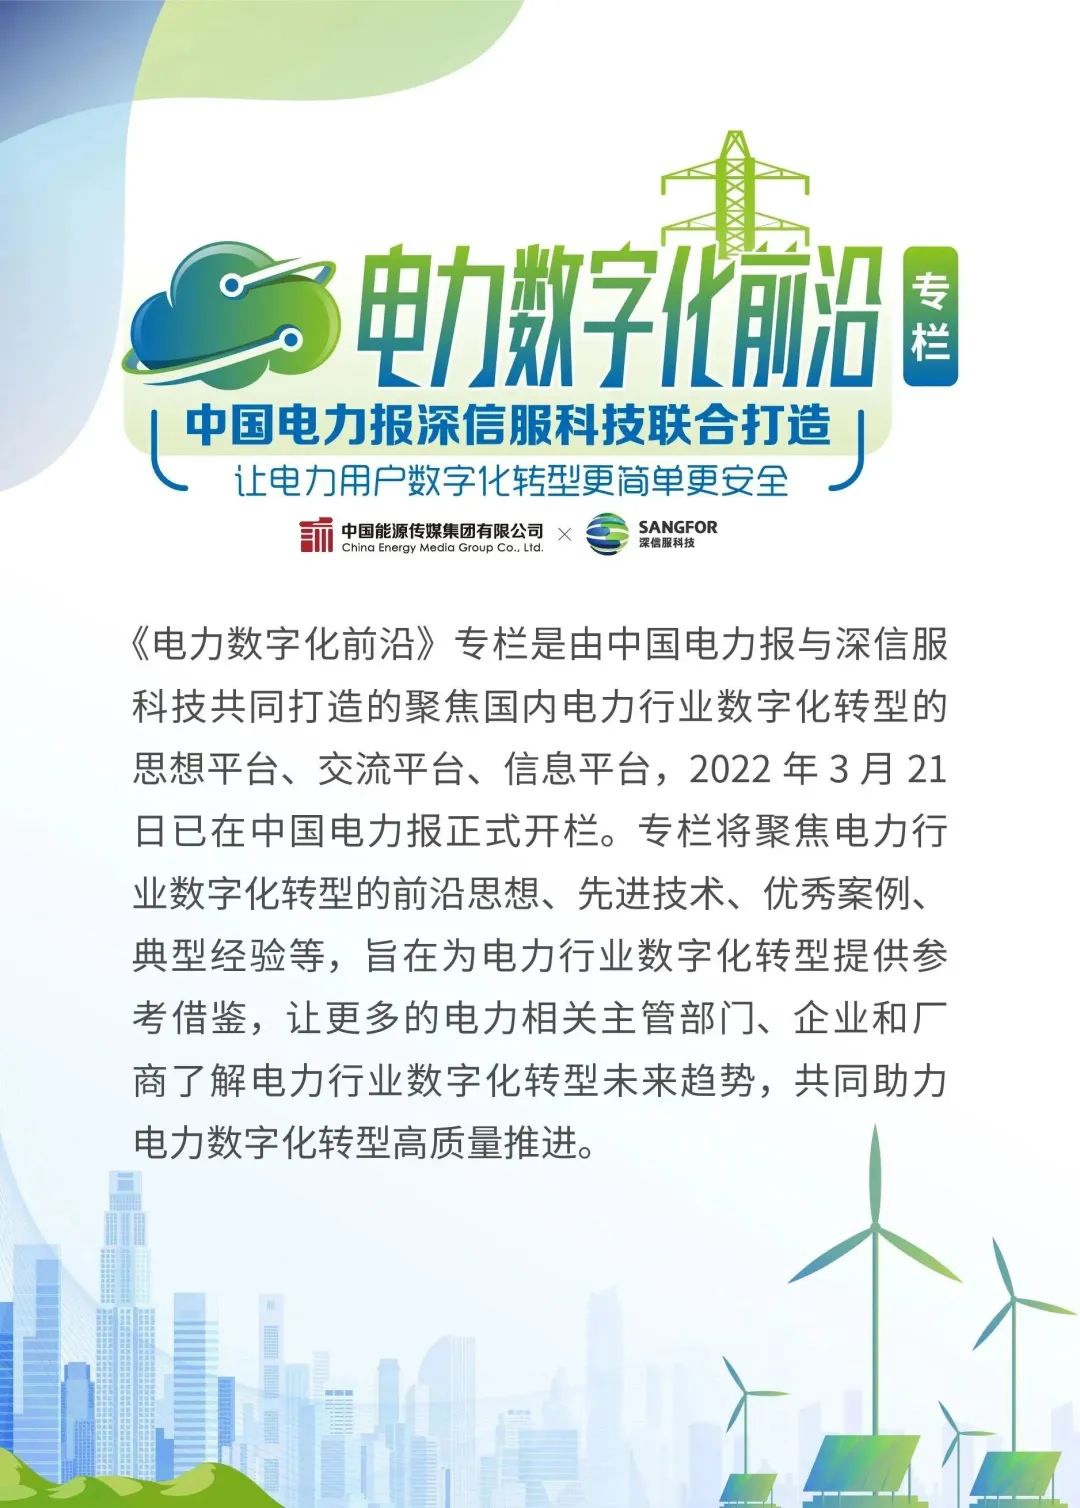 本文转载自中国电力报（12月8日），专栏设计引用自中国电力报